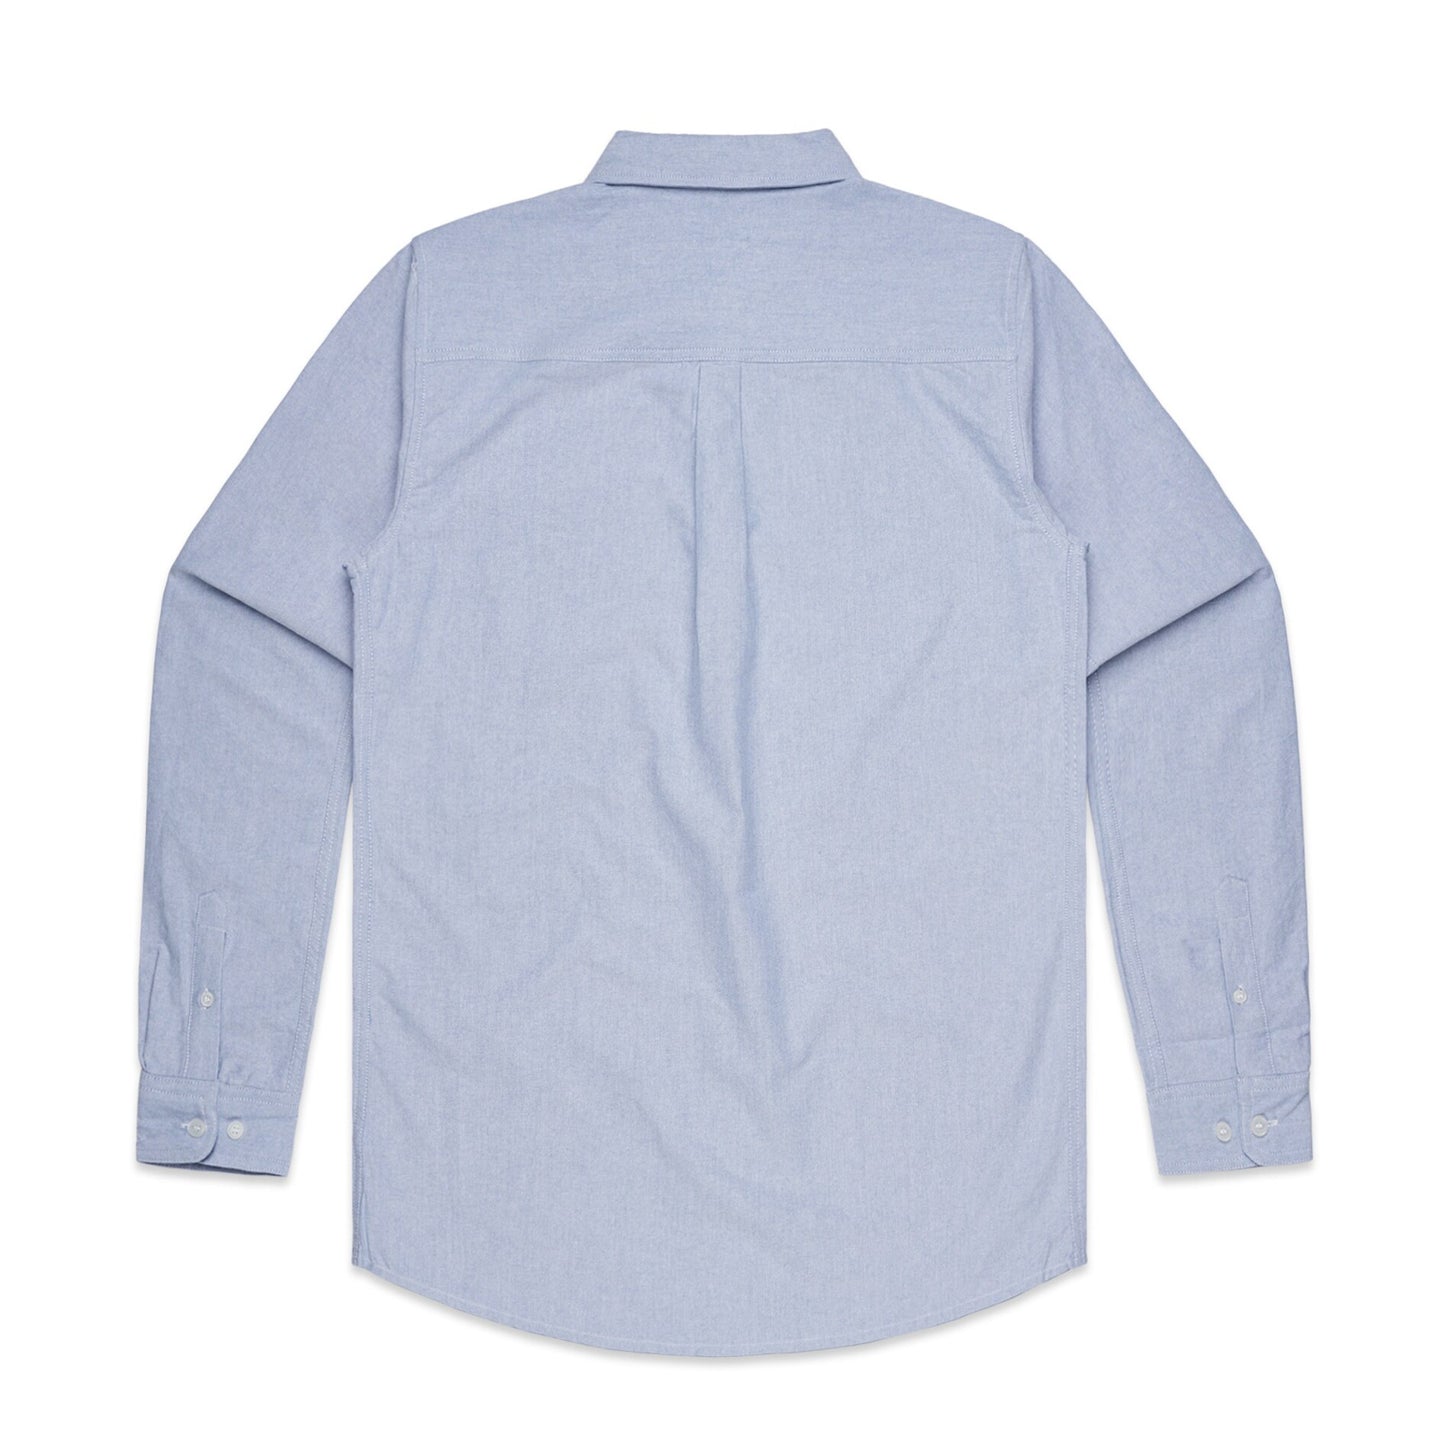 As Colour - Oxford Shirt - 5401